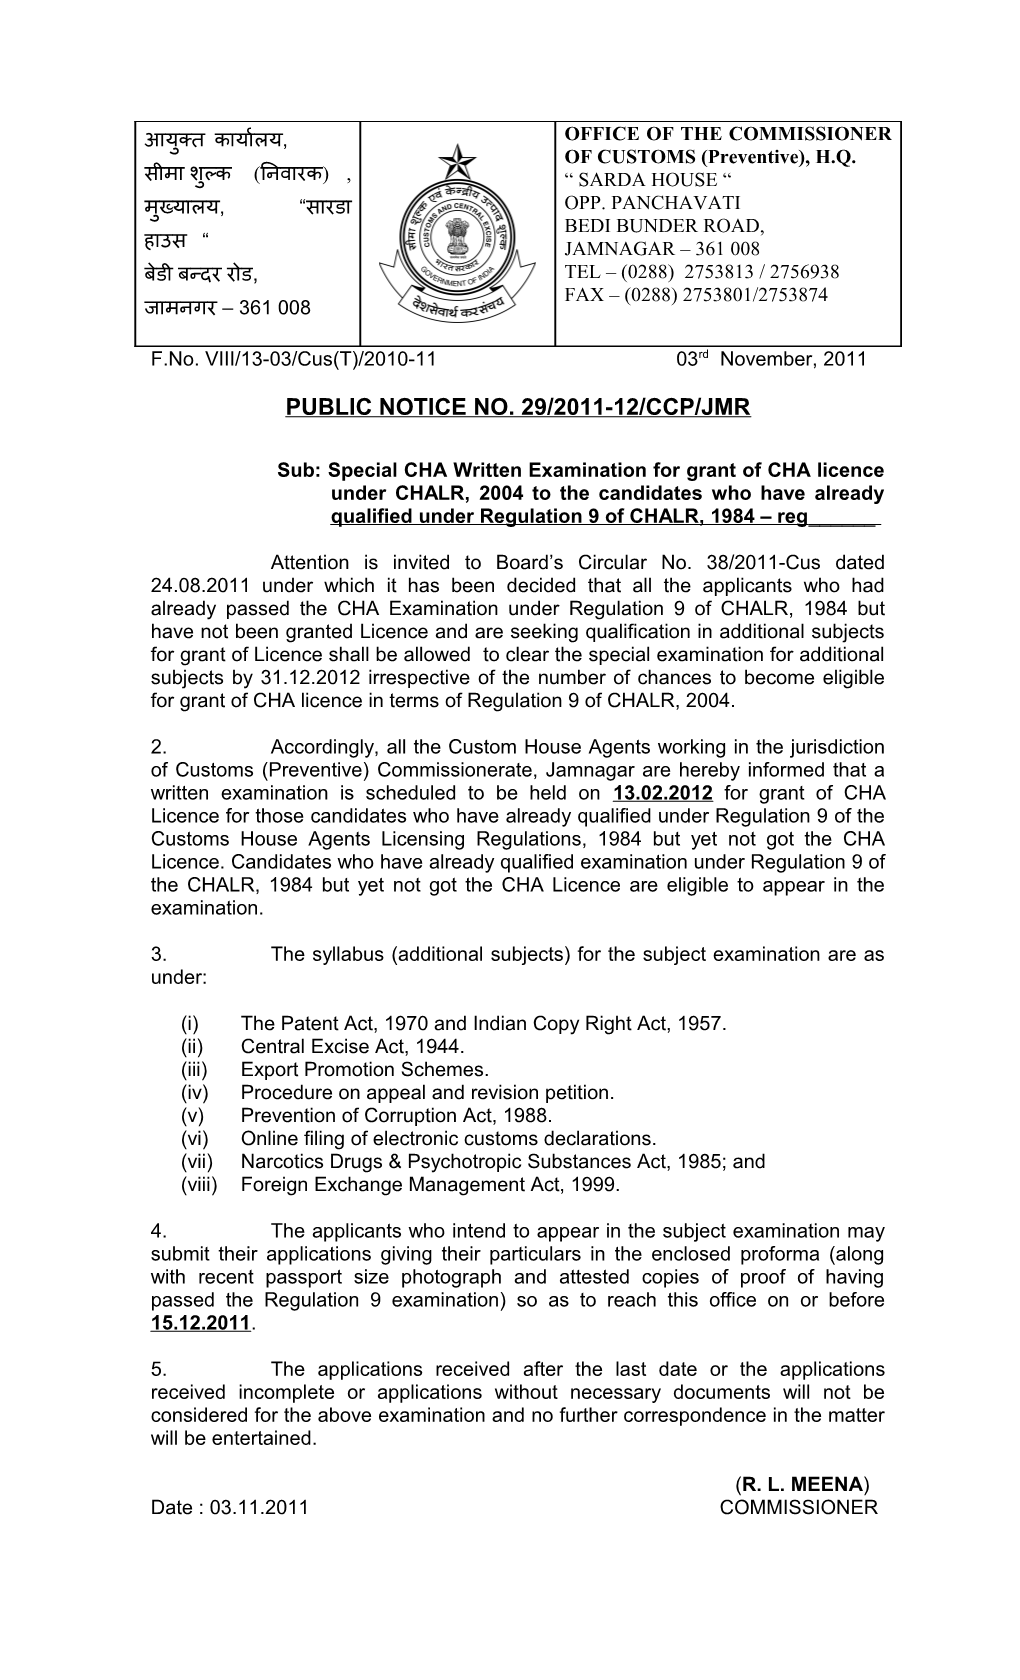 Public Notice No. 29/2011-12/Ccp/Jmr